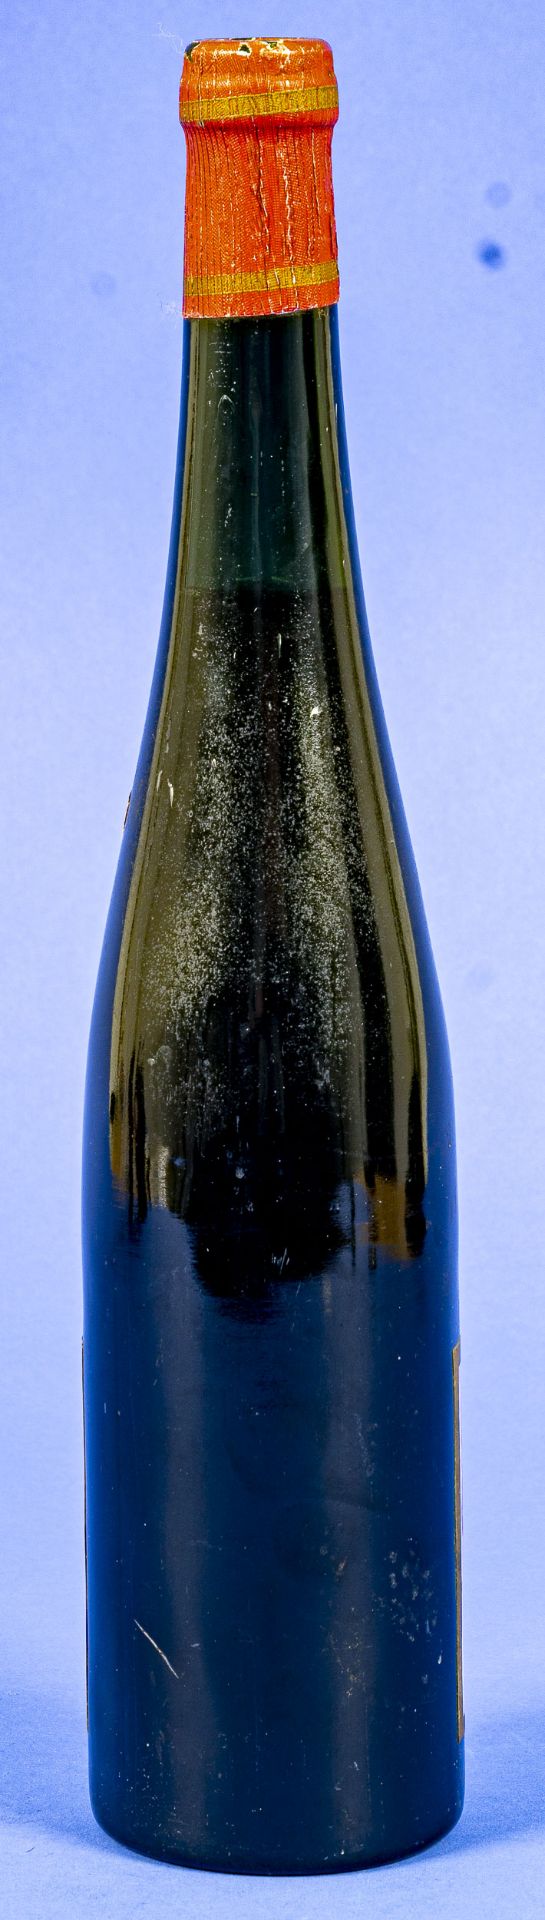 "Wehlener Sonnenuhr" 1935er, Fuder 6, Flasche Weißwein für Sammler. Naturwein Jakob Friedrich. Wach - Bild 10 aus 12